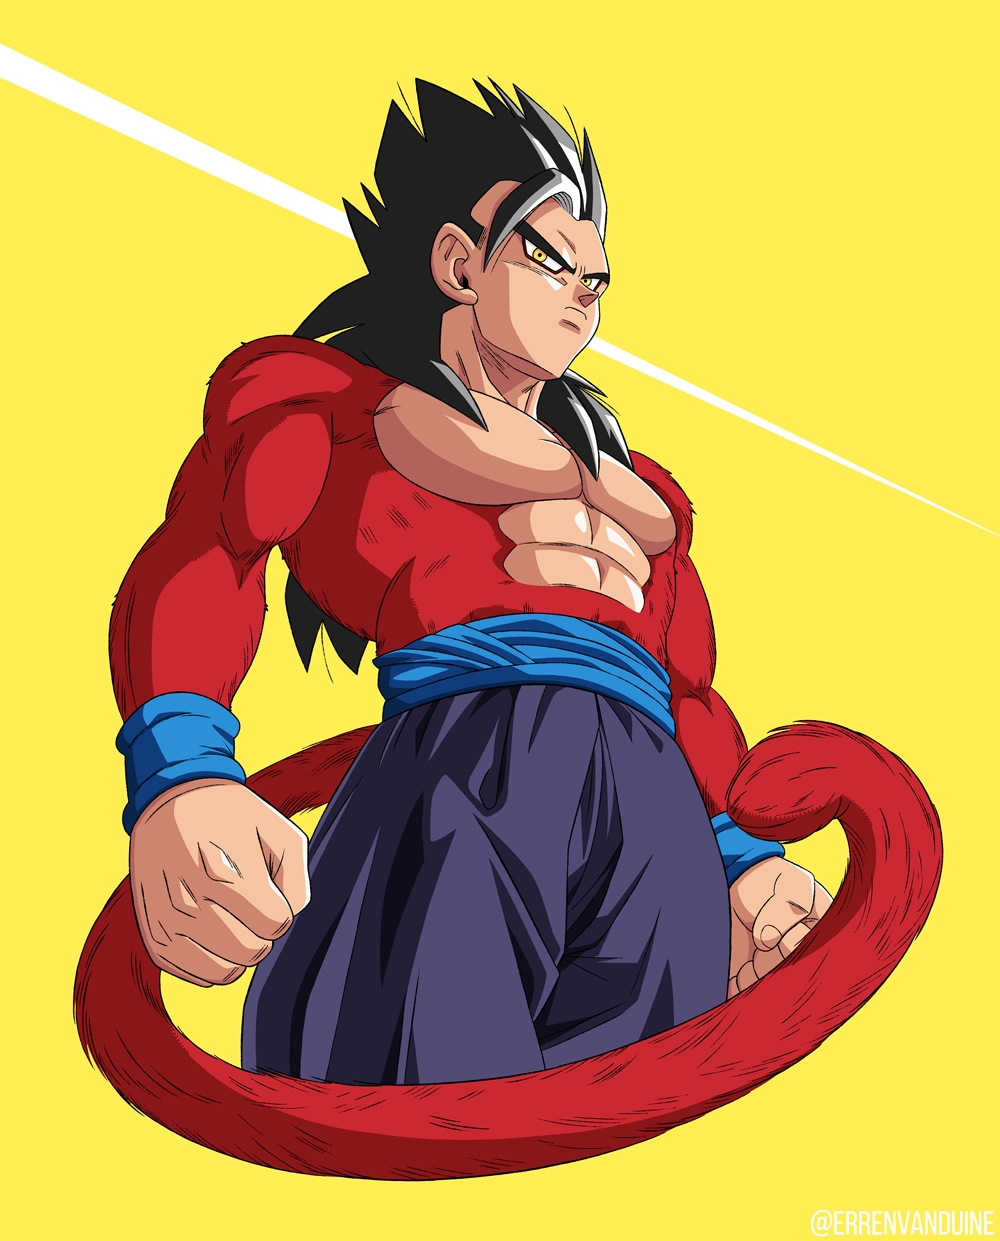 Gohan Super Saiyajin 4? Artista imagina versão do filho de Goku com essa  transformação